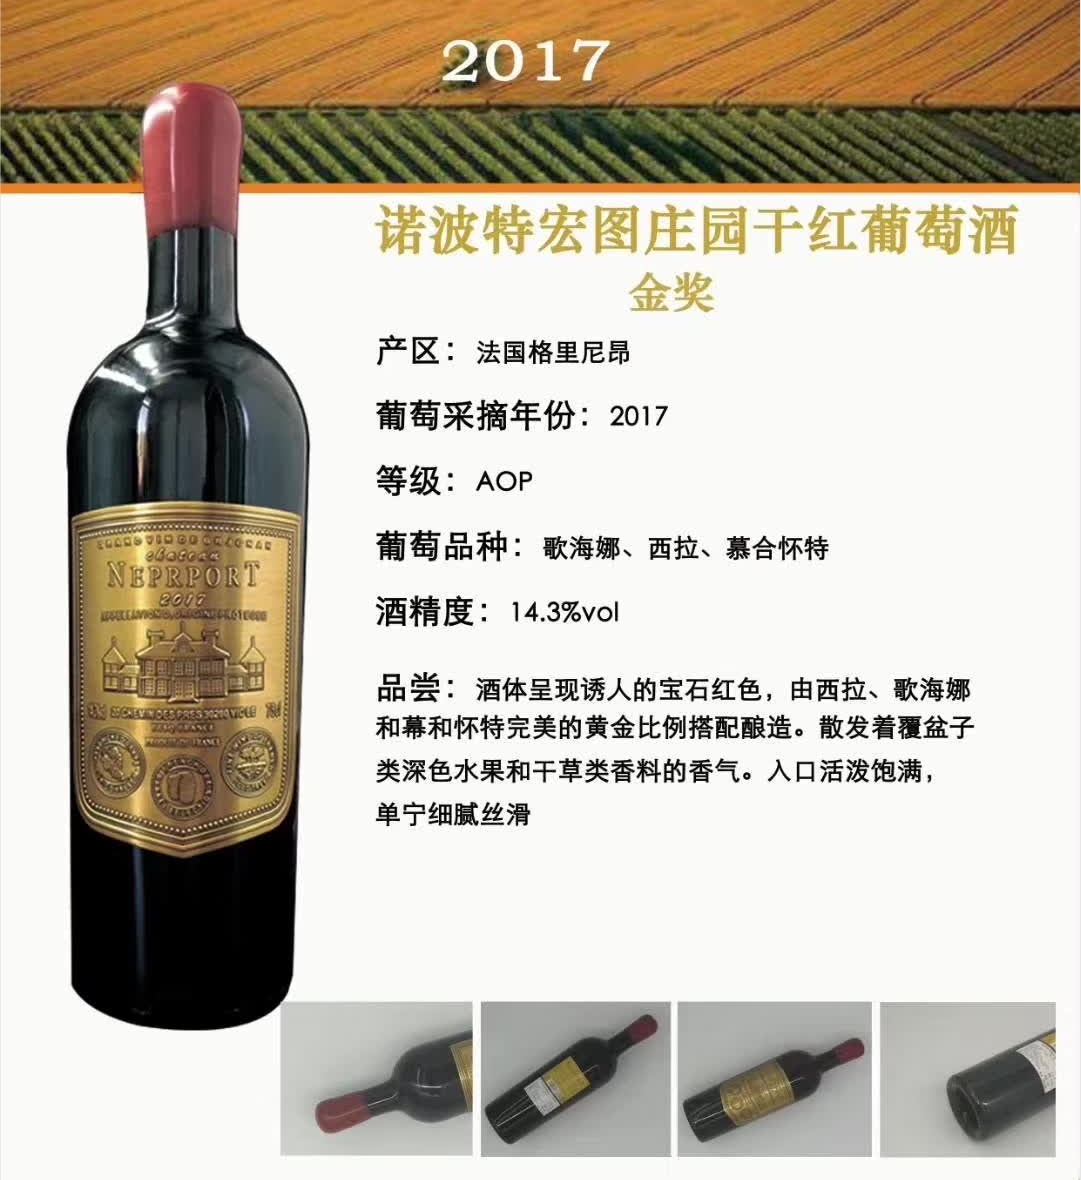 上海万耀诺波特宏图庄园干红葡萄酒现货供应法国原装原瓶进口AOP级别混酿葡萄酒进口红酒葡萄酒代理加盟